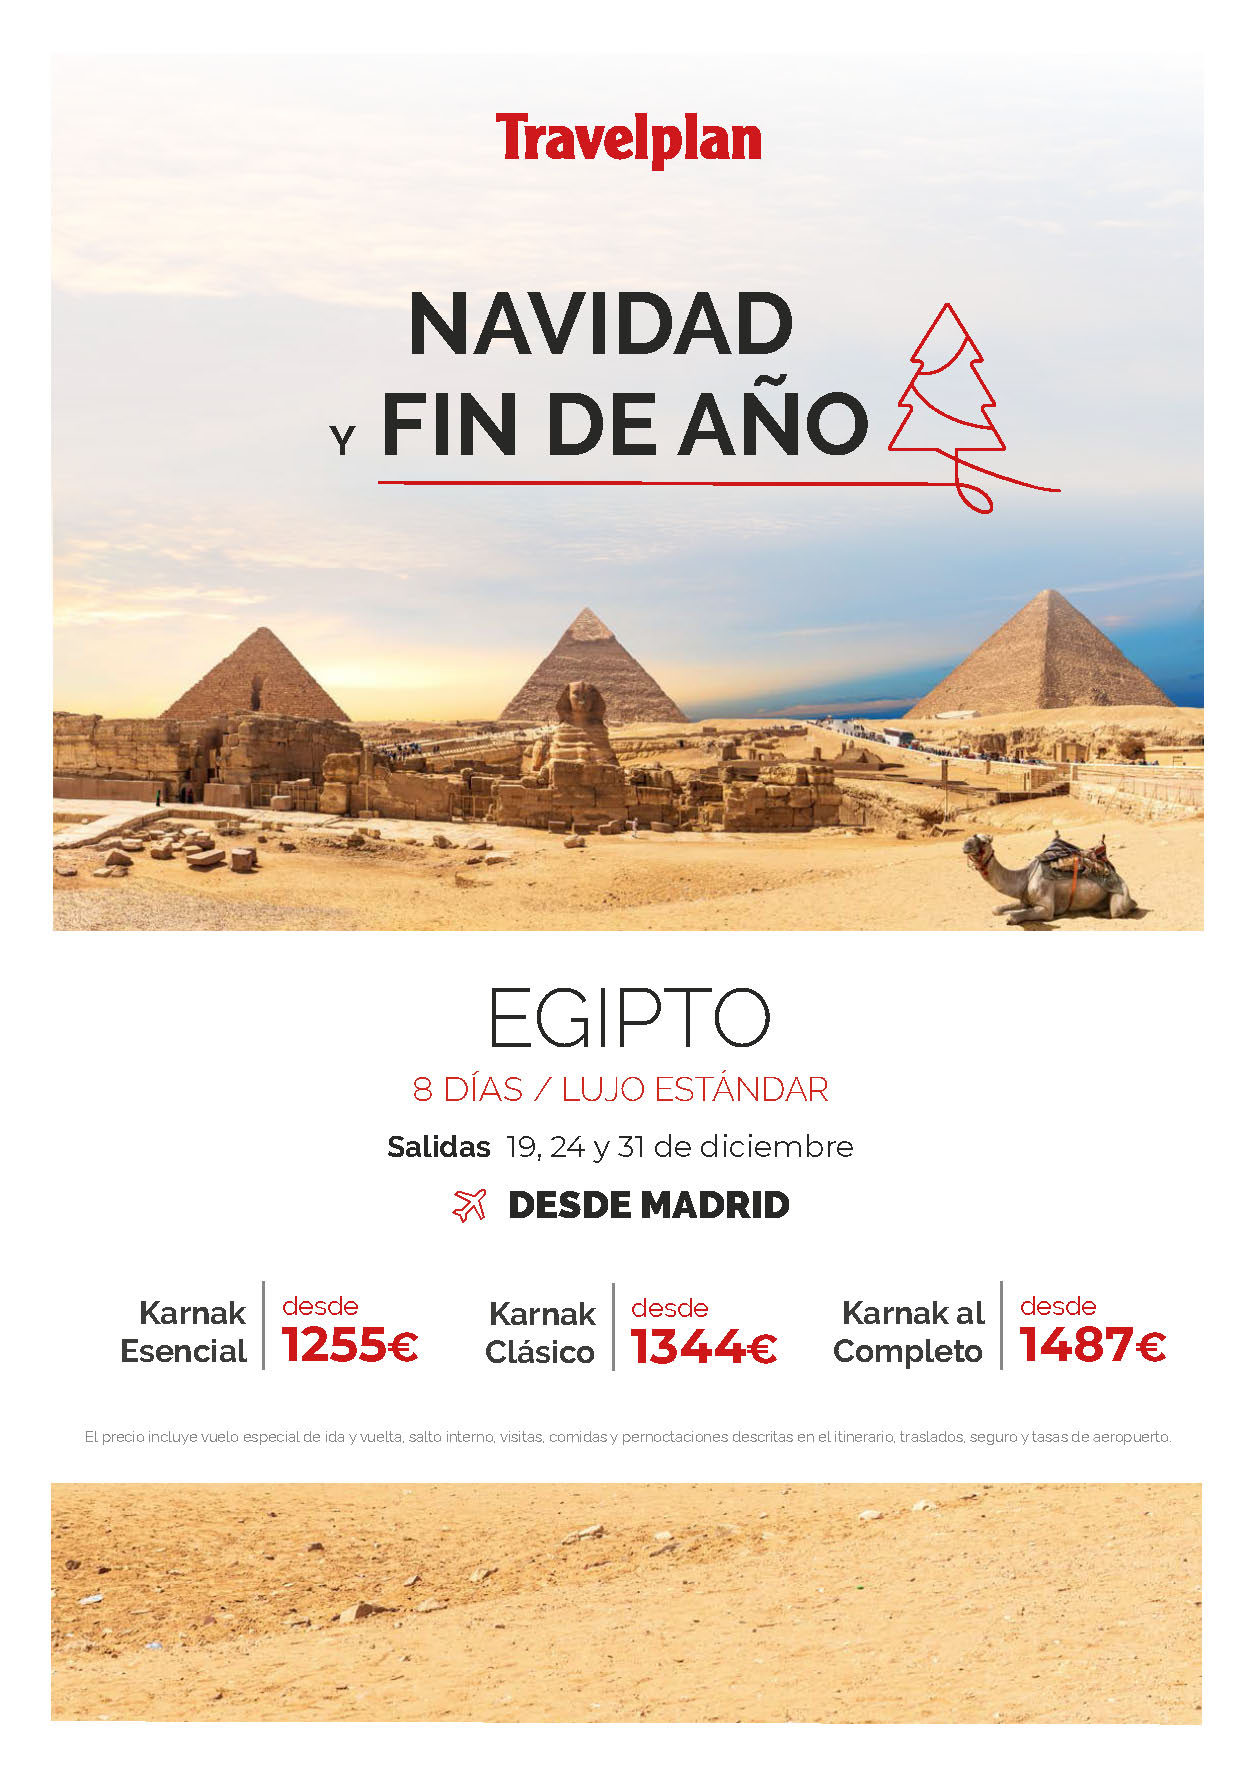 Ofertas Travelplan Navidad y Fin de Año en Egipto 8 dias salidas en vuelos directos desde Madrid